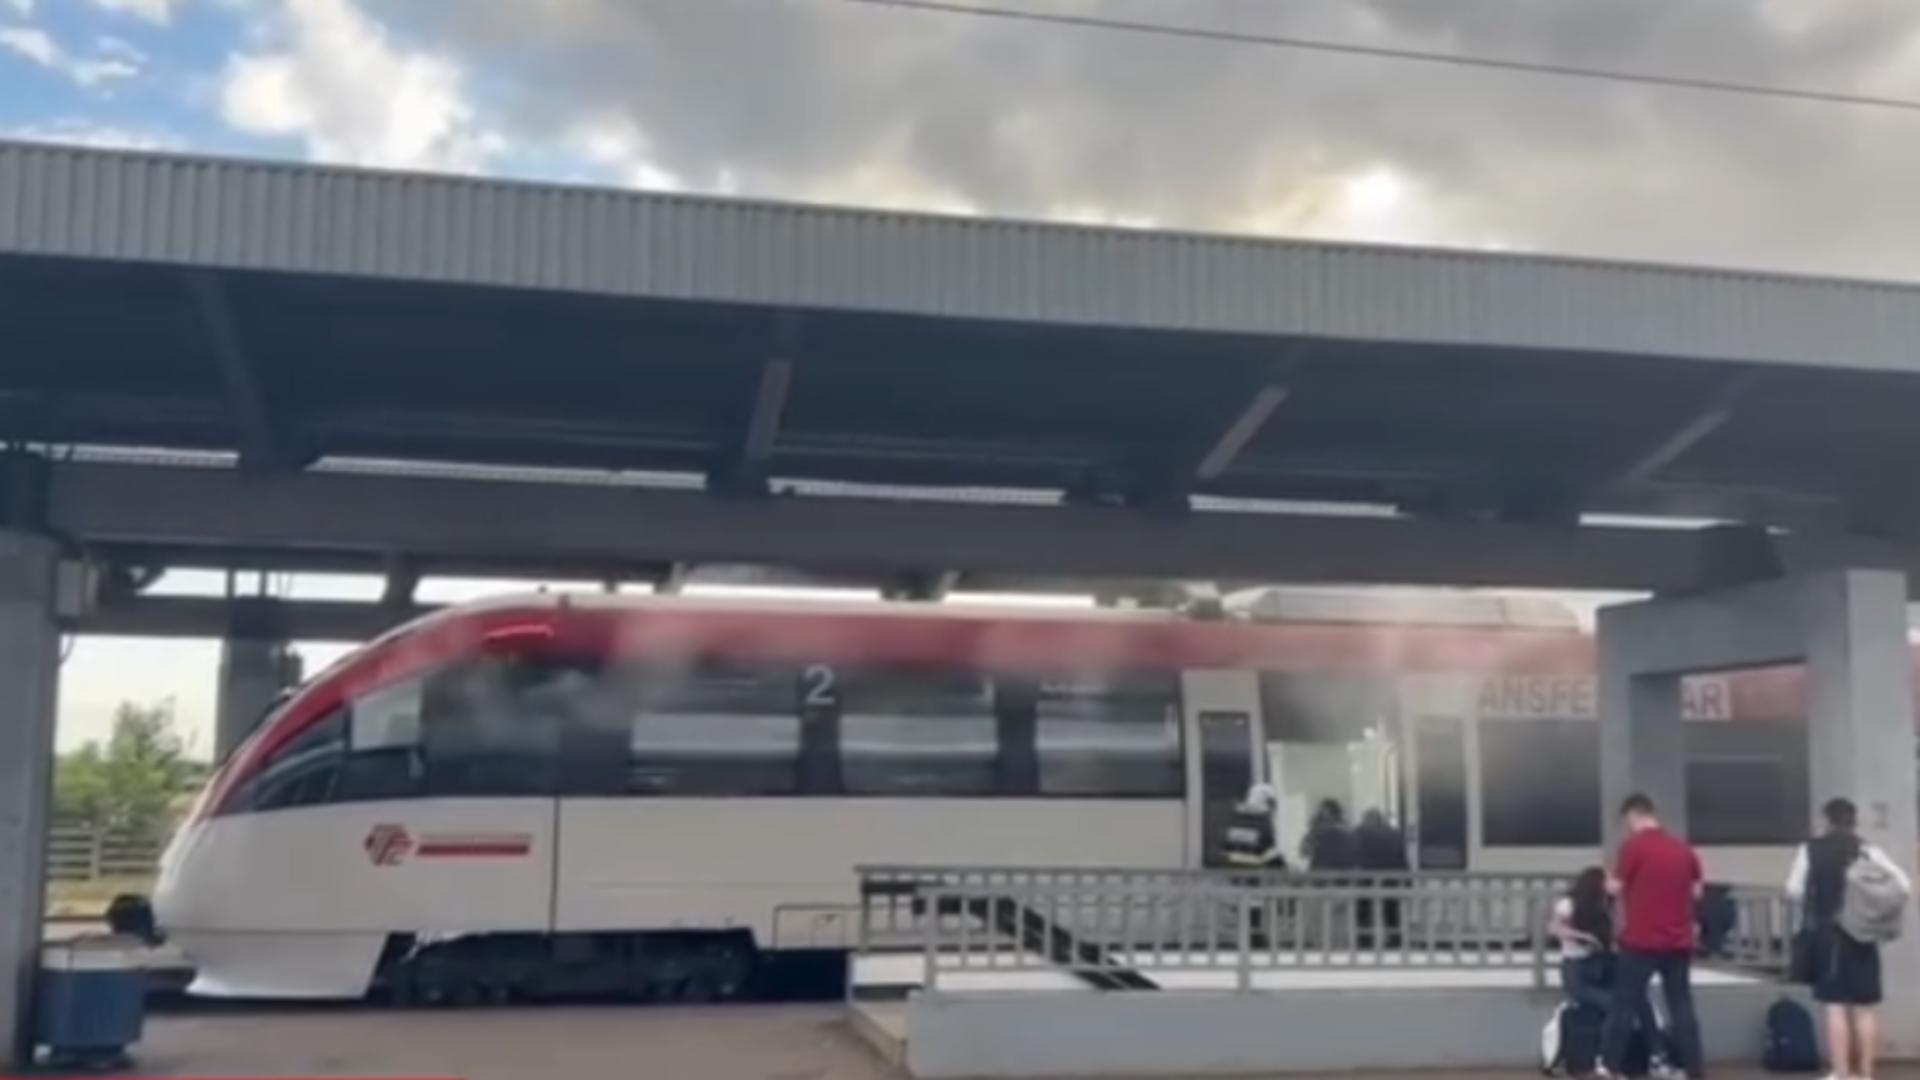 Incendiu produs la un tren de călători, în Ploiești, Gara de Vest. Foto: Facebook